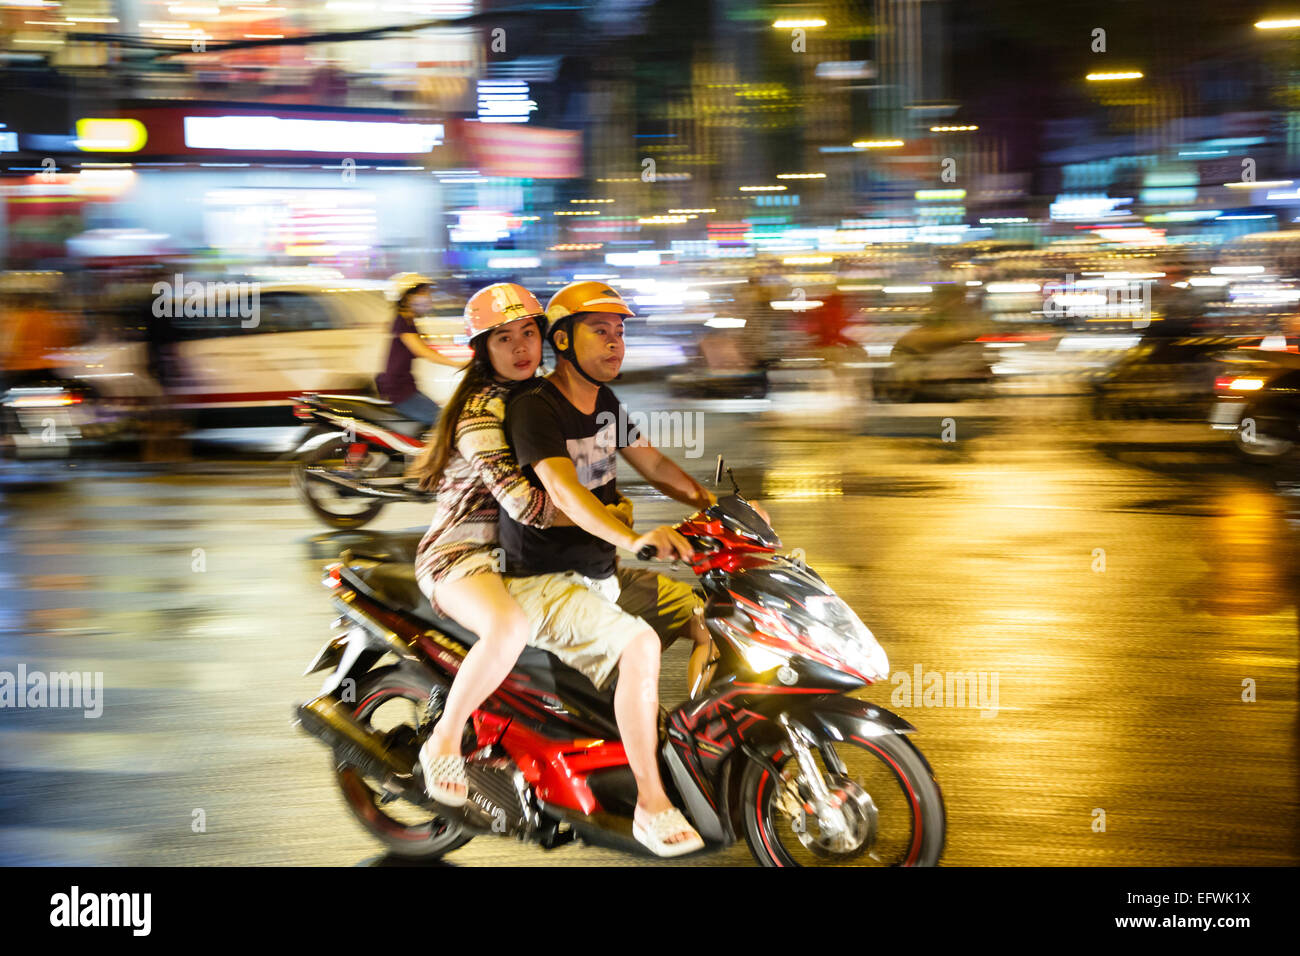 Le trafic nocturne, Ho Chi Minh Ville (Saigon), Vietnam. Banque D'Images